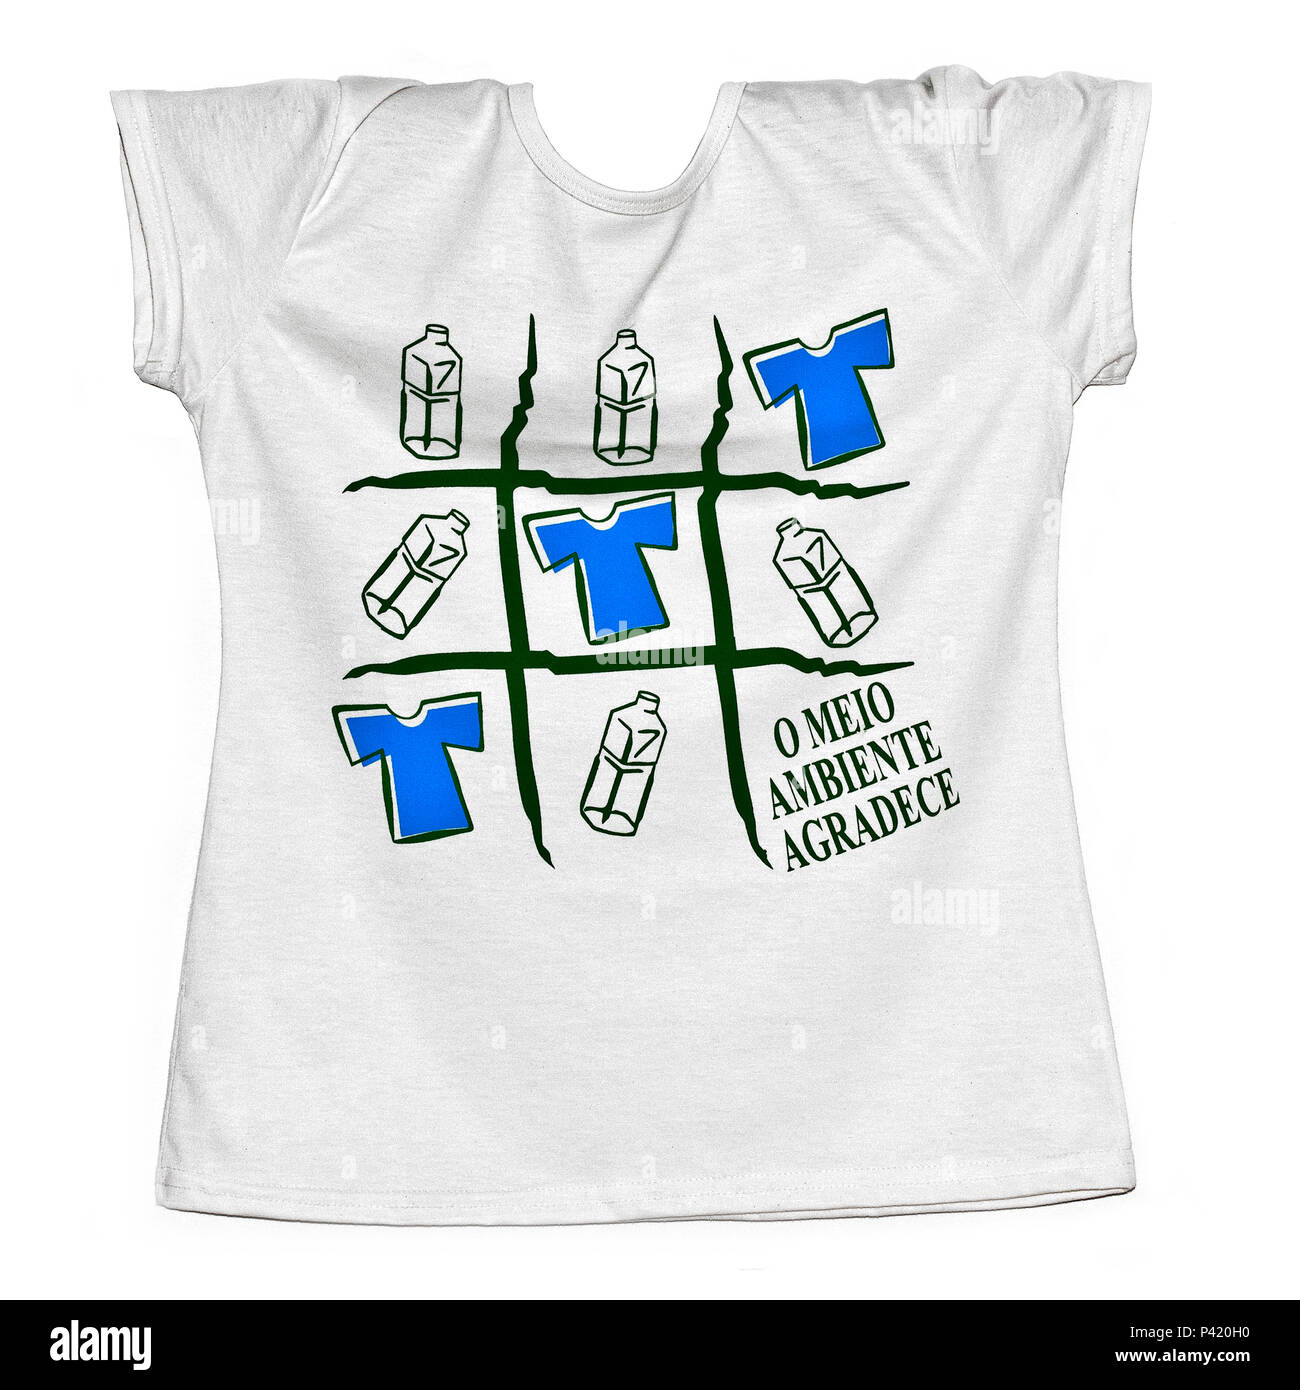 Camiseta de garrafa pet hi-res stock photography and images - Alamy